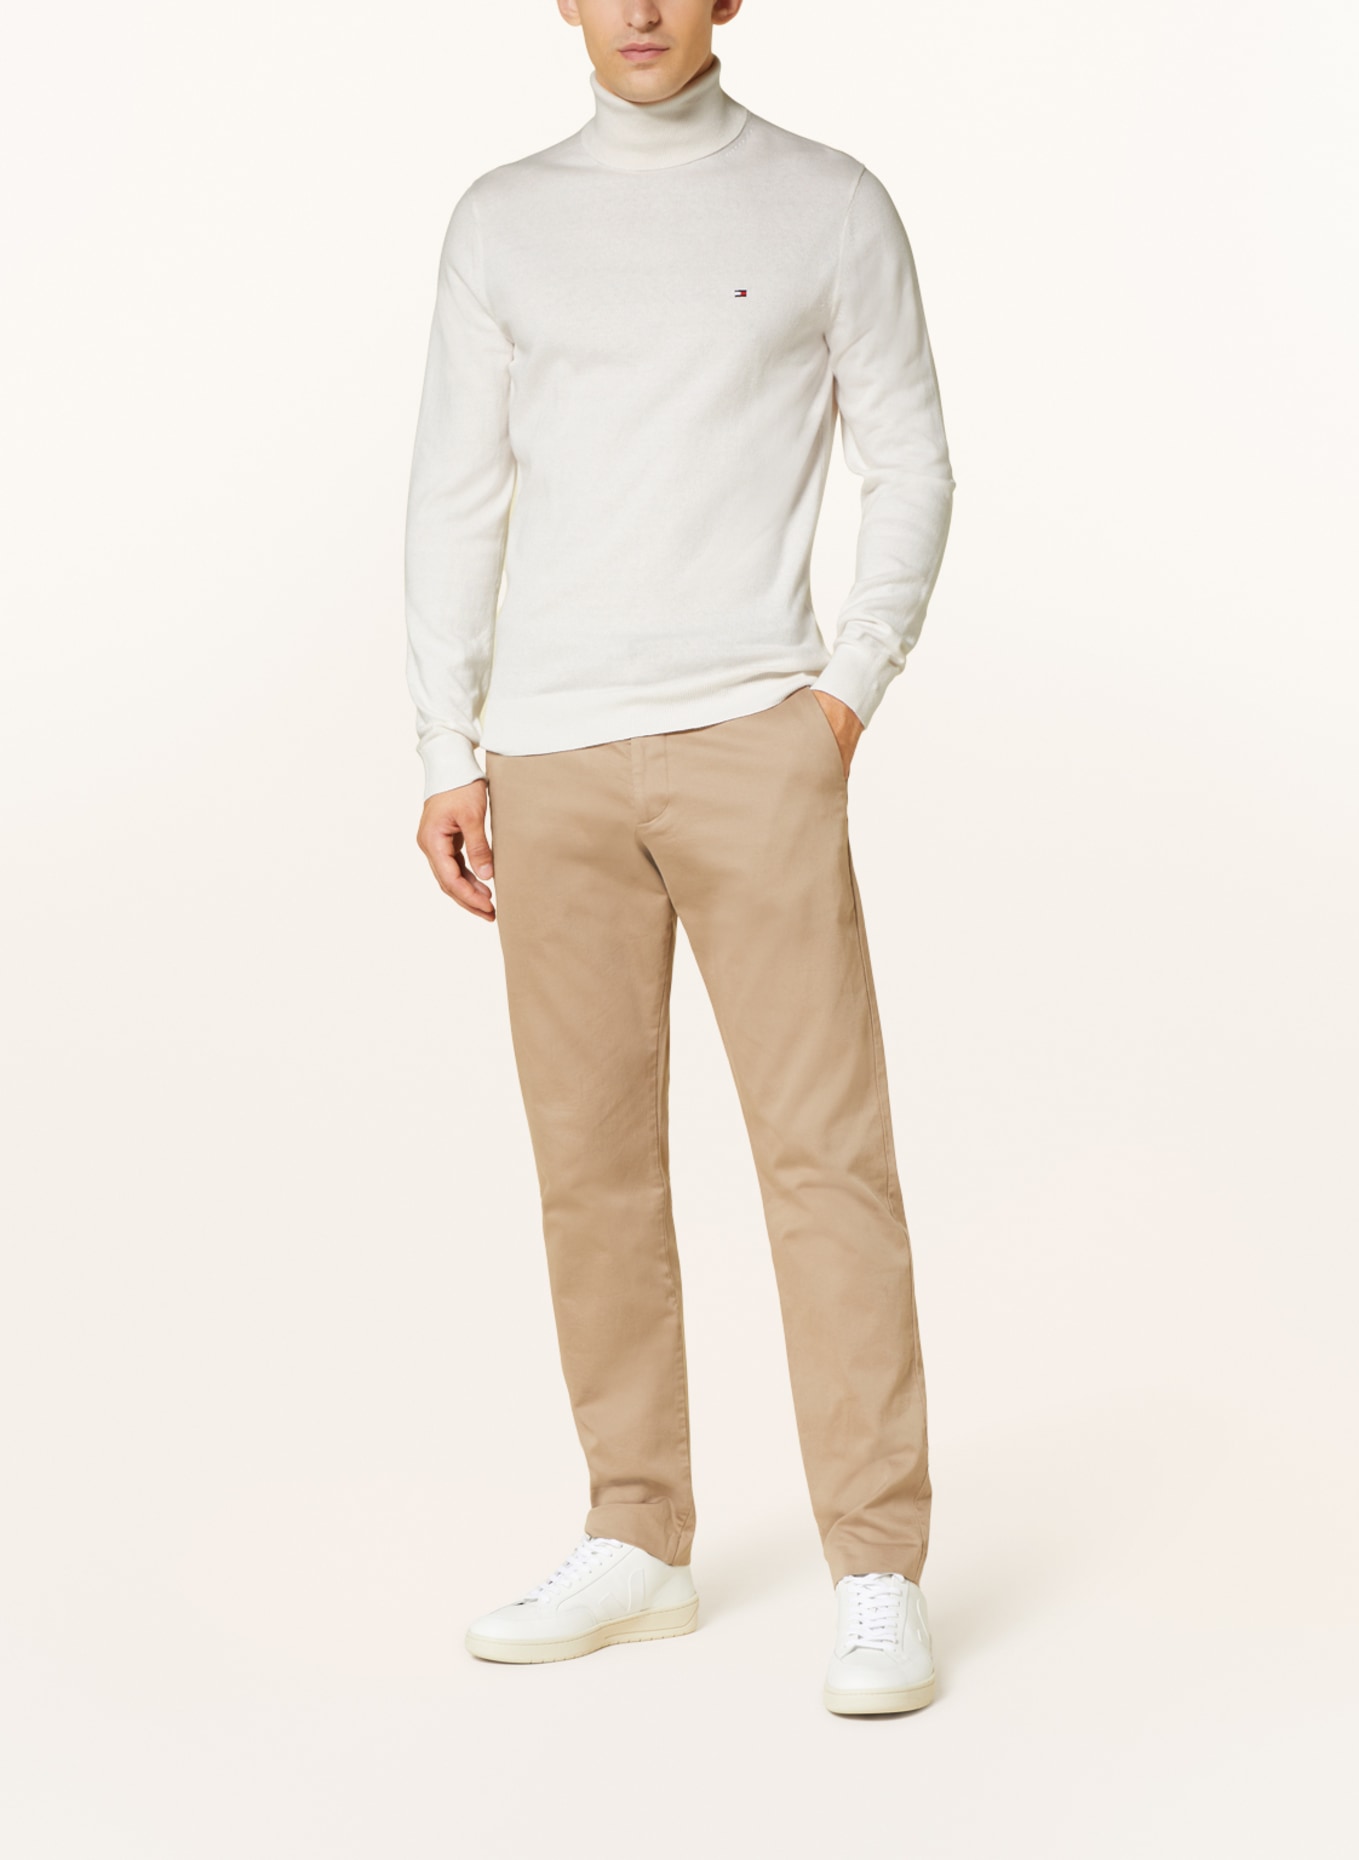 TOMMY HILFIGER Turtleneck sweater, Color: WHITE (Image 2)